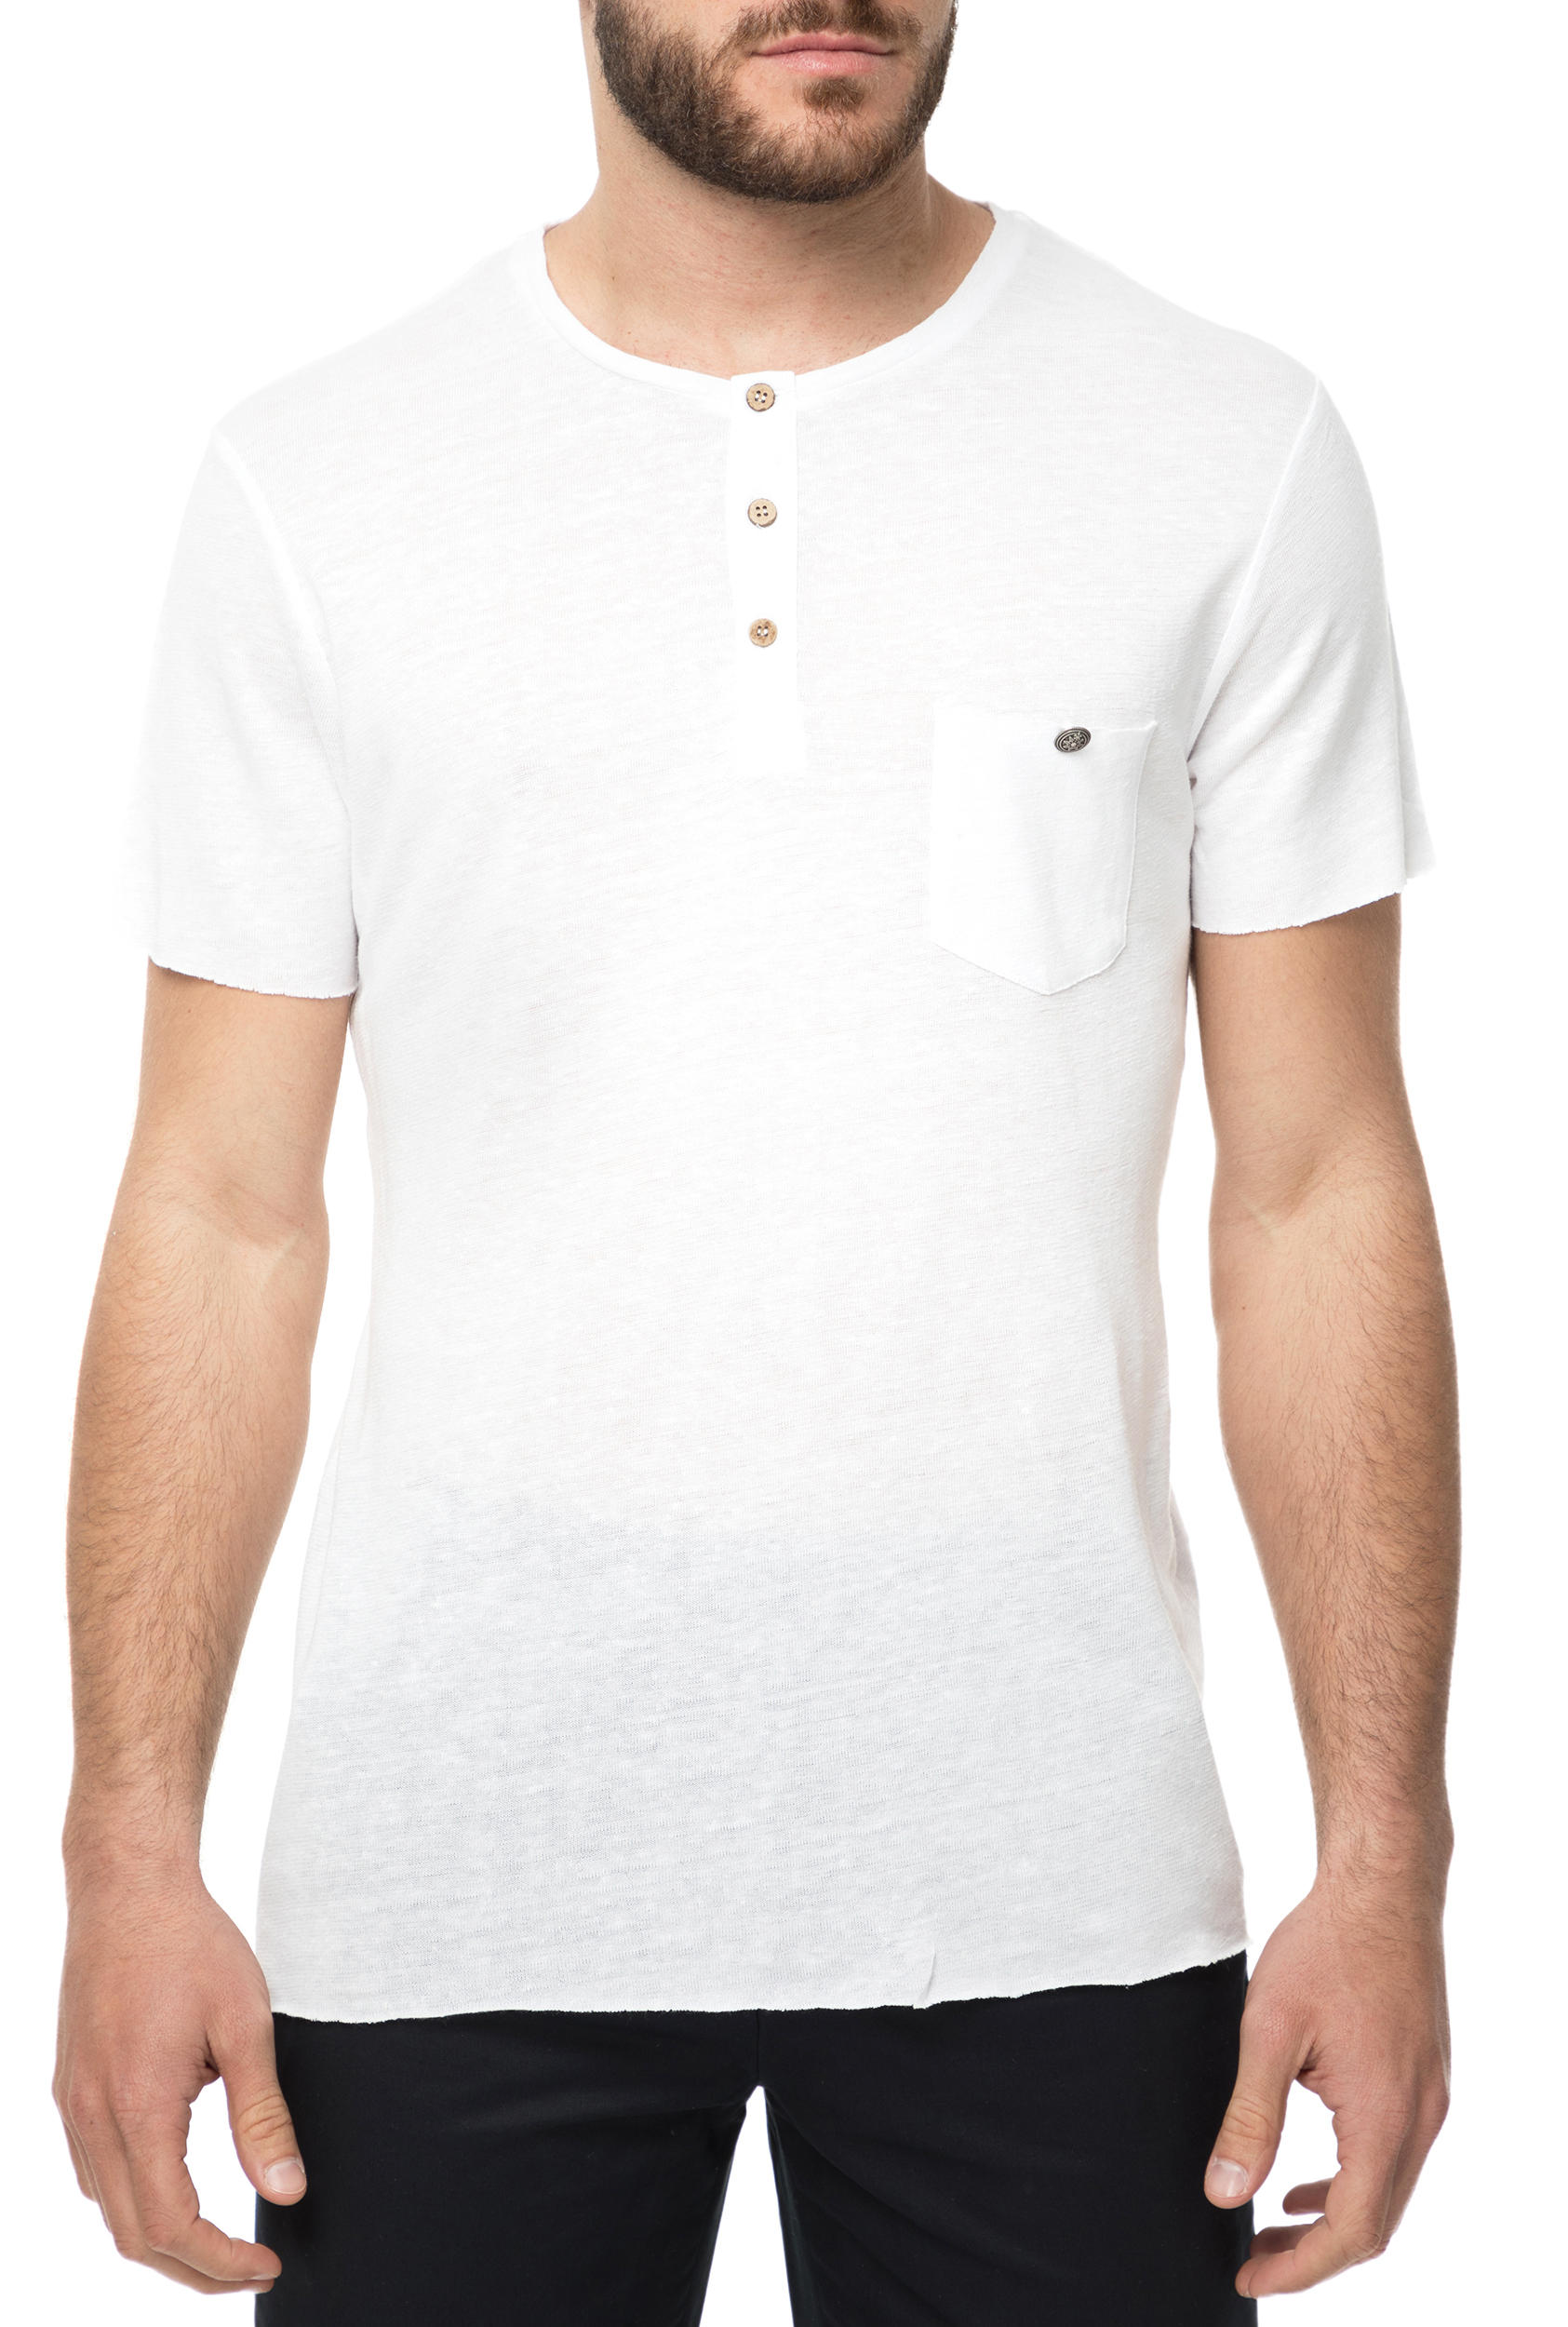 Ανδρικά/Ρούχα/Μπλούζες/Κοντομάνικες SSEINSE - Ανδρική κοντομάνικη μπλούζα SSEINSE SERAFINO λευκή